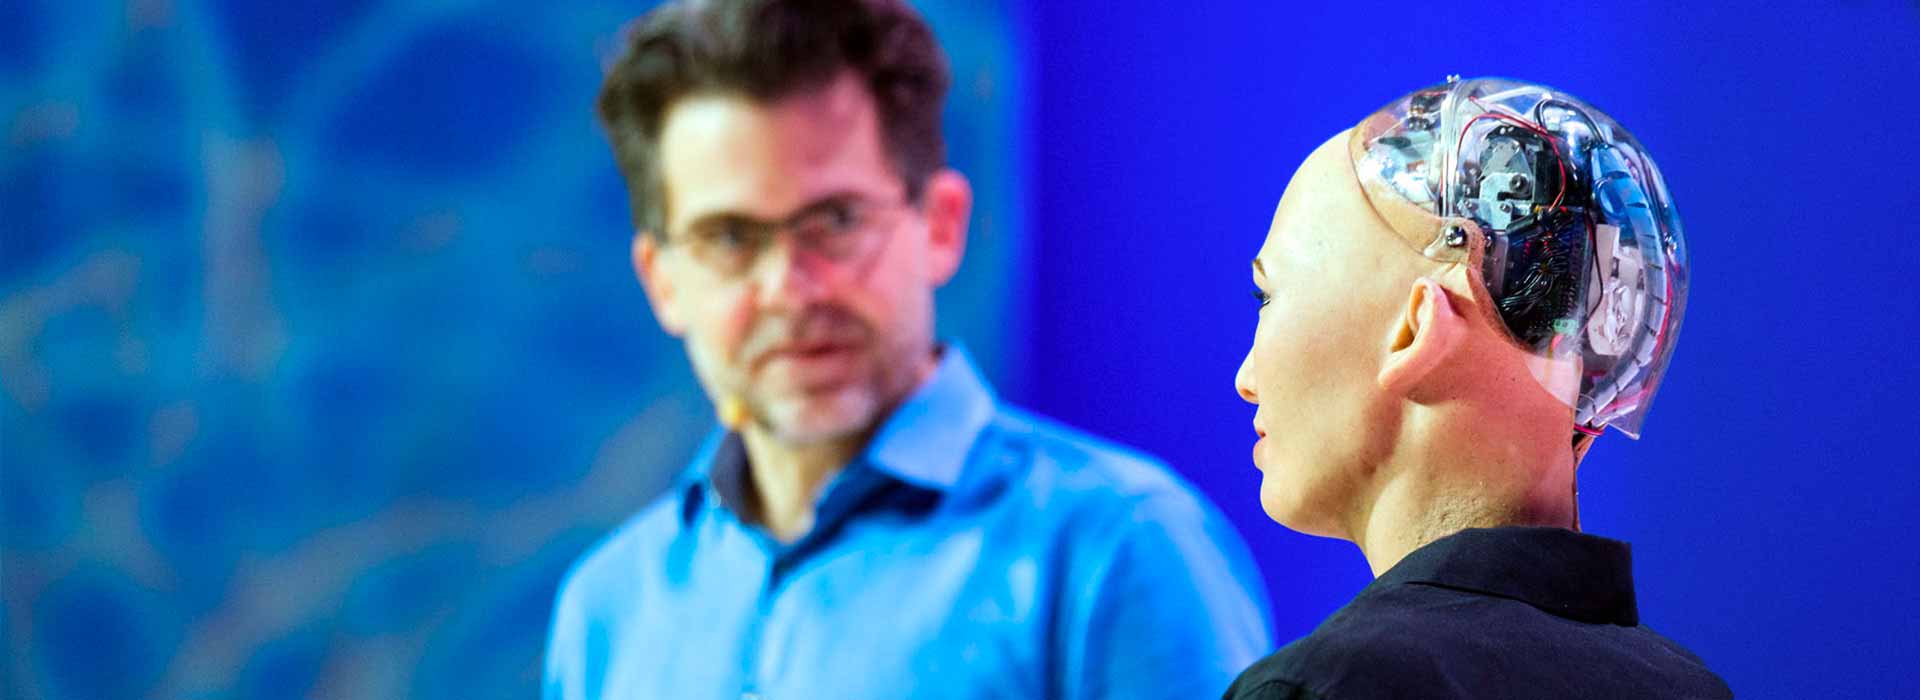 L’automazione e androidi umani: il nuovo volto del lavoro